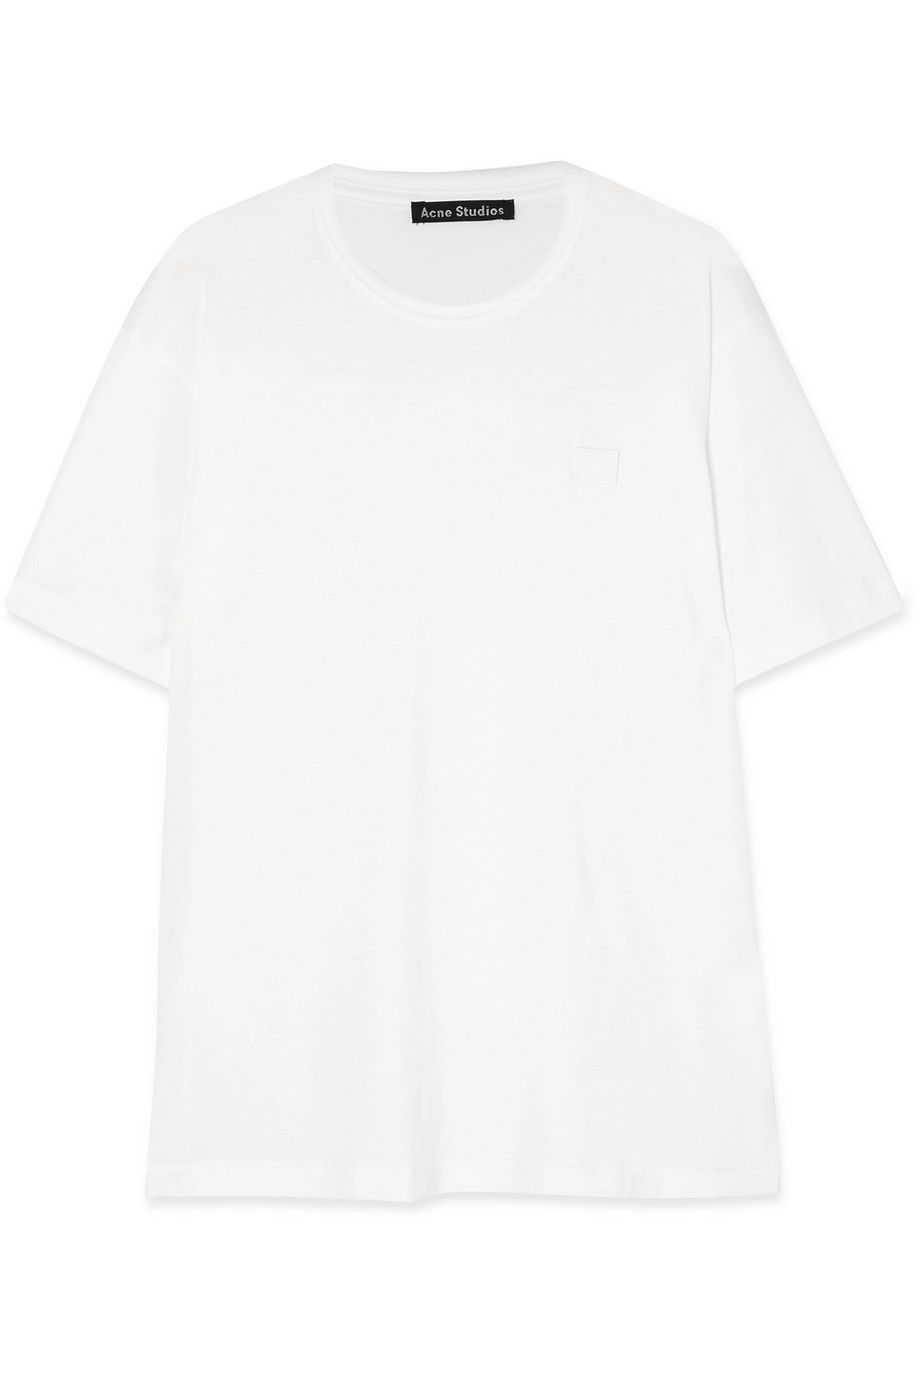 Nash Face Appliquéd Cotton-Jersey T-shirt